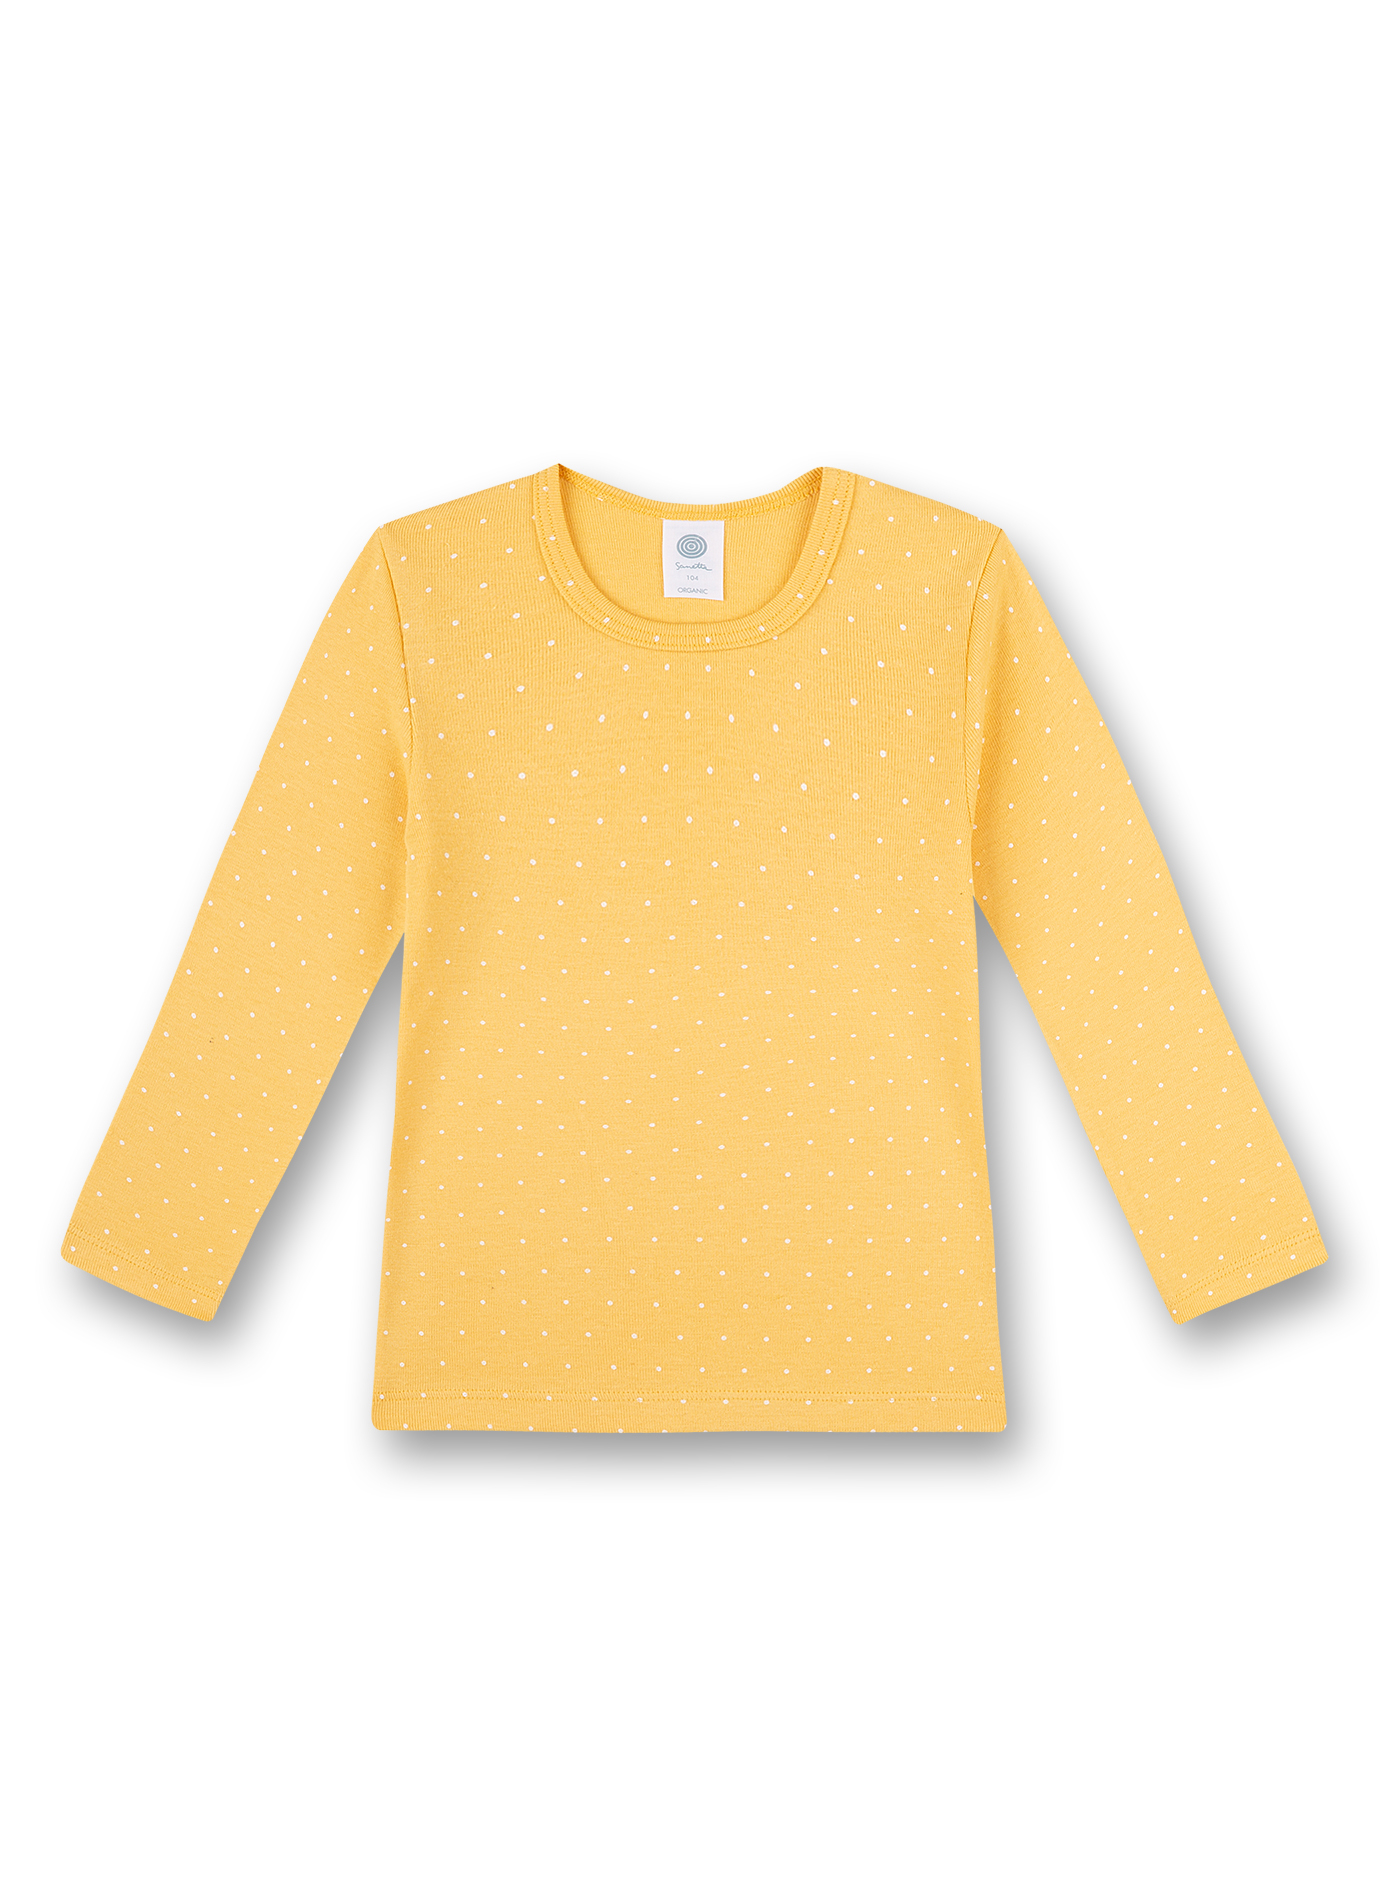 Mädchen-Unterhemd langarm Gelb Back to Nature